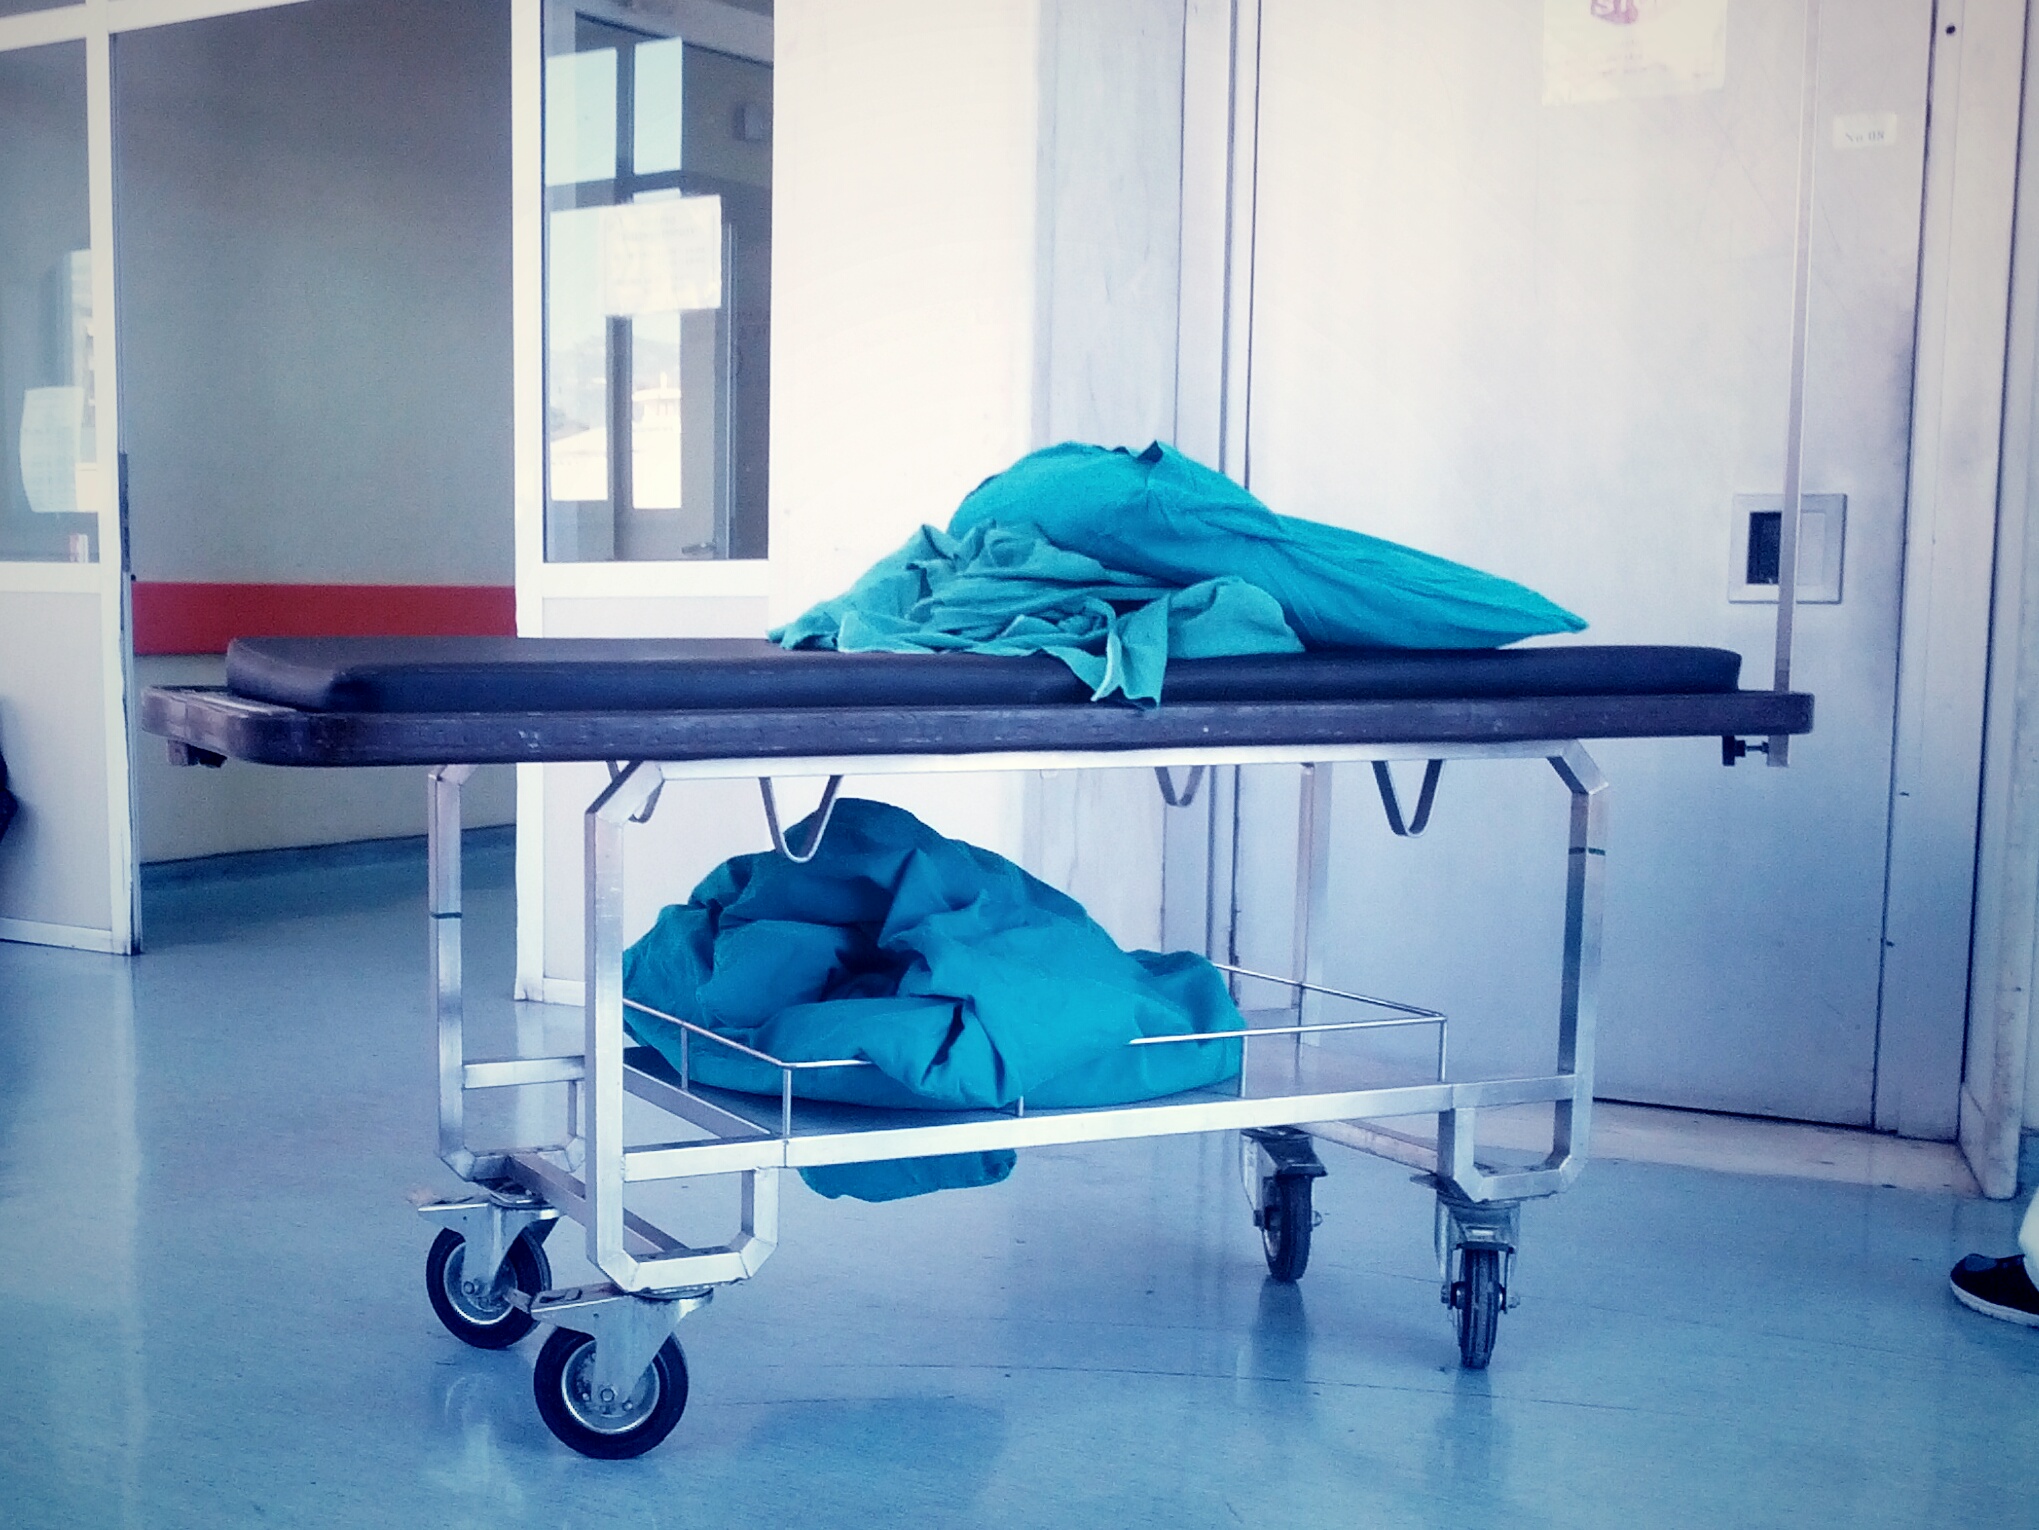 Ηλεία: Πέθανε 41χρονος πατέρας στο χειρουργείο, χαροπάλευε μετά από τροχαίο με εγκατάλειψη στο Περιστέρι Αττικής